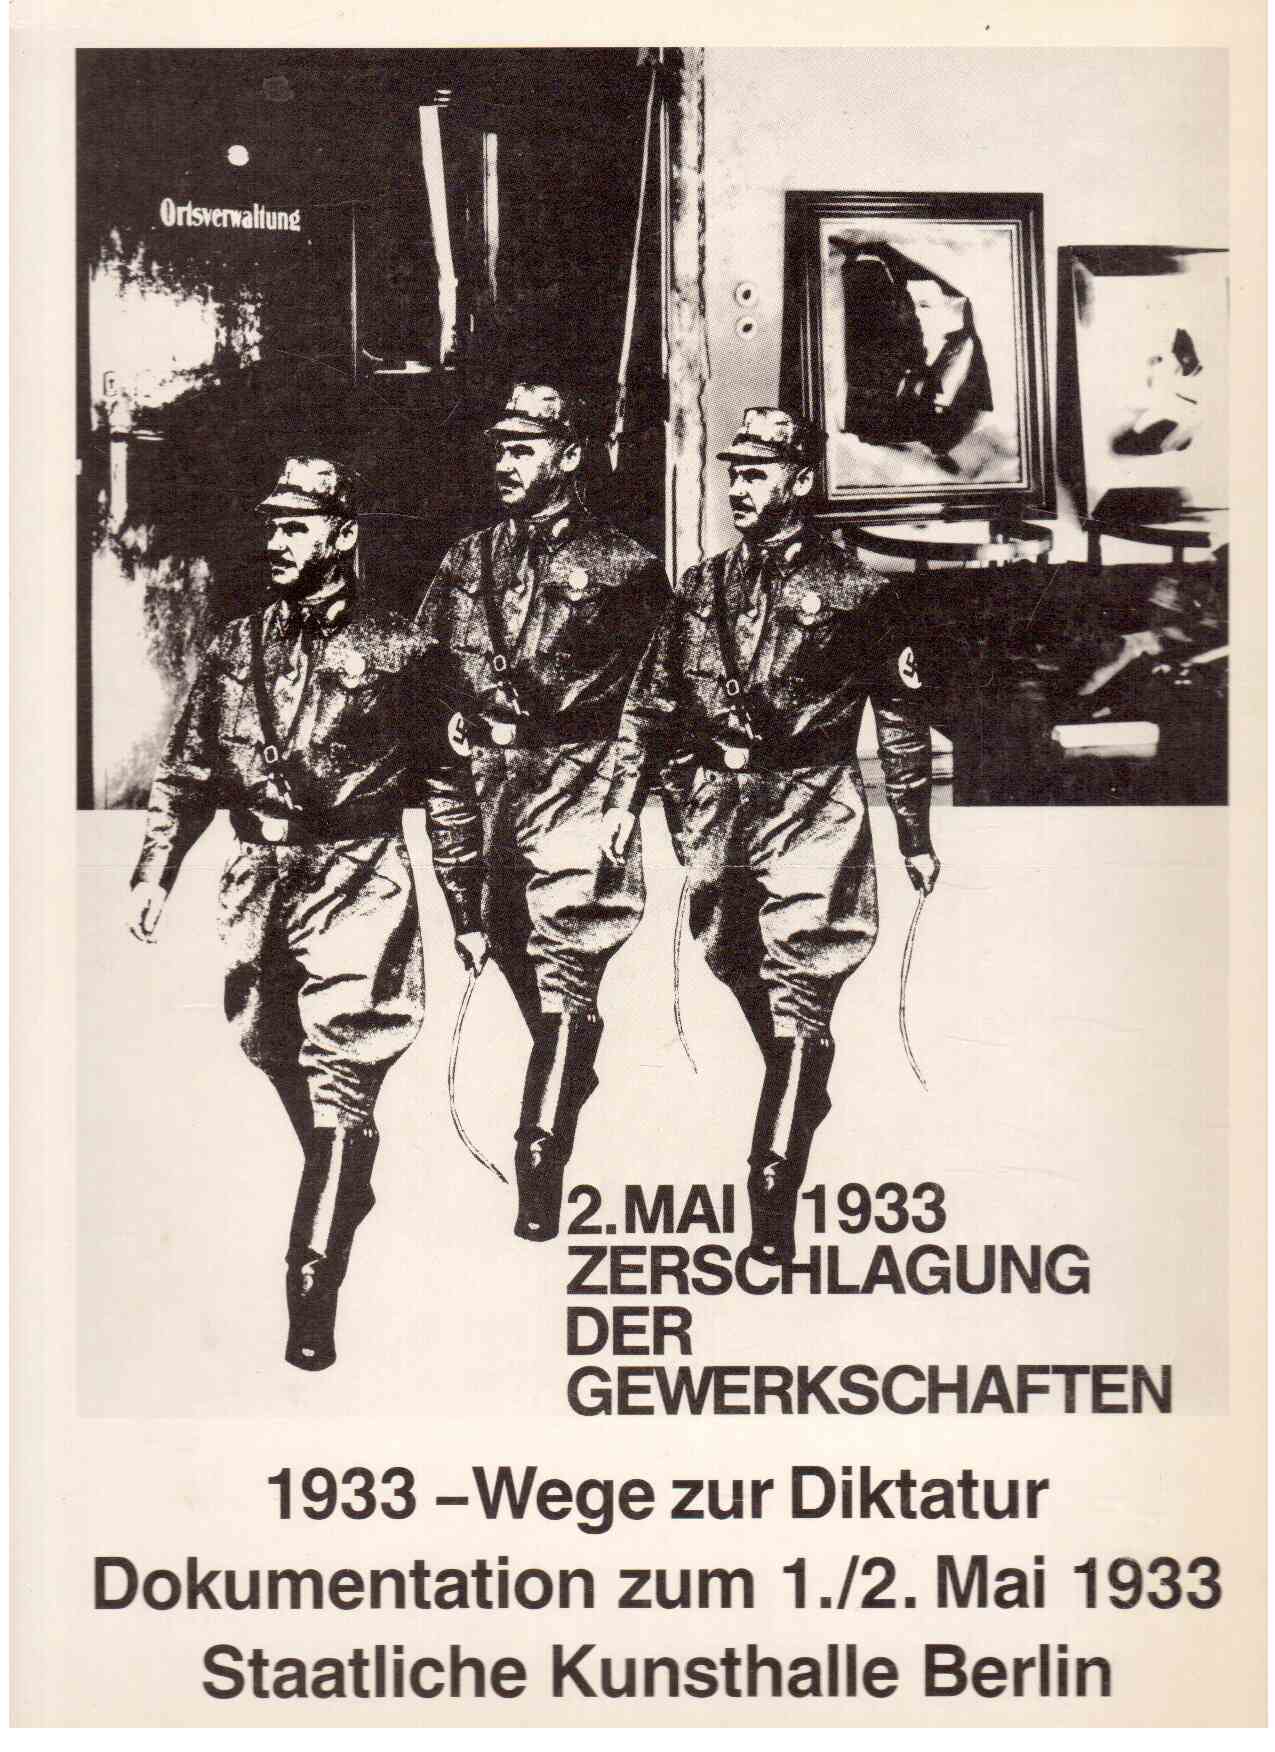 2. Mai 1933, Zerschlagung der Gewerkschaften, 1933 - Wege zur Diktatur